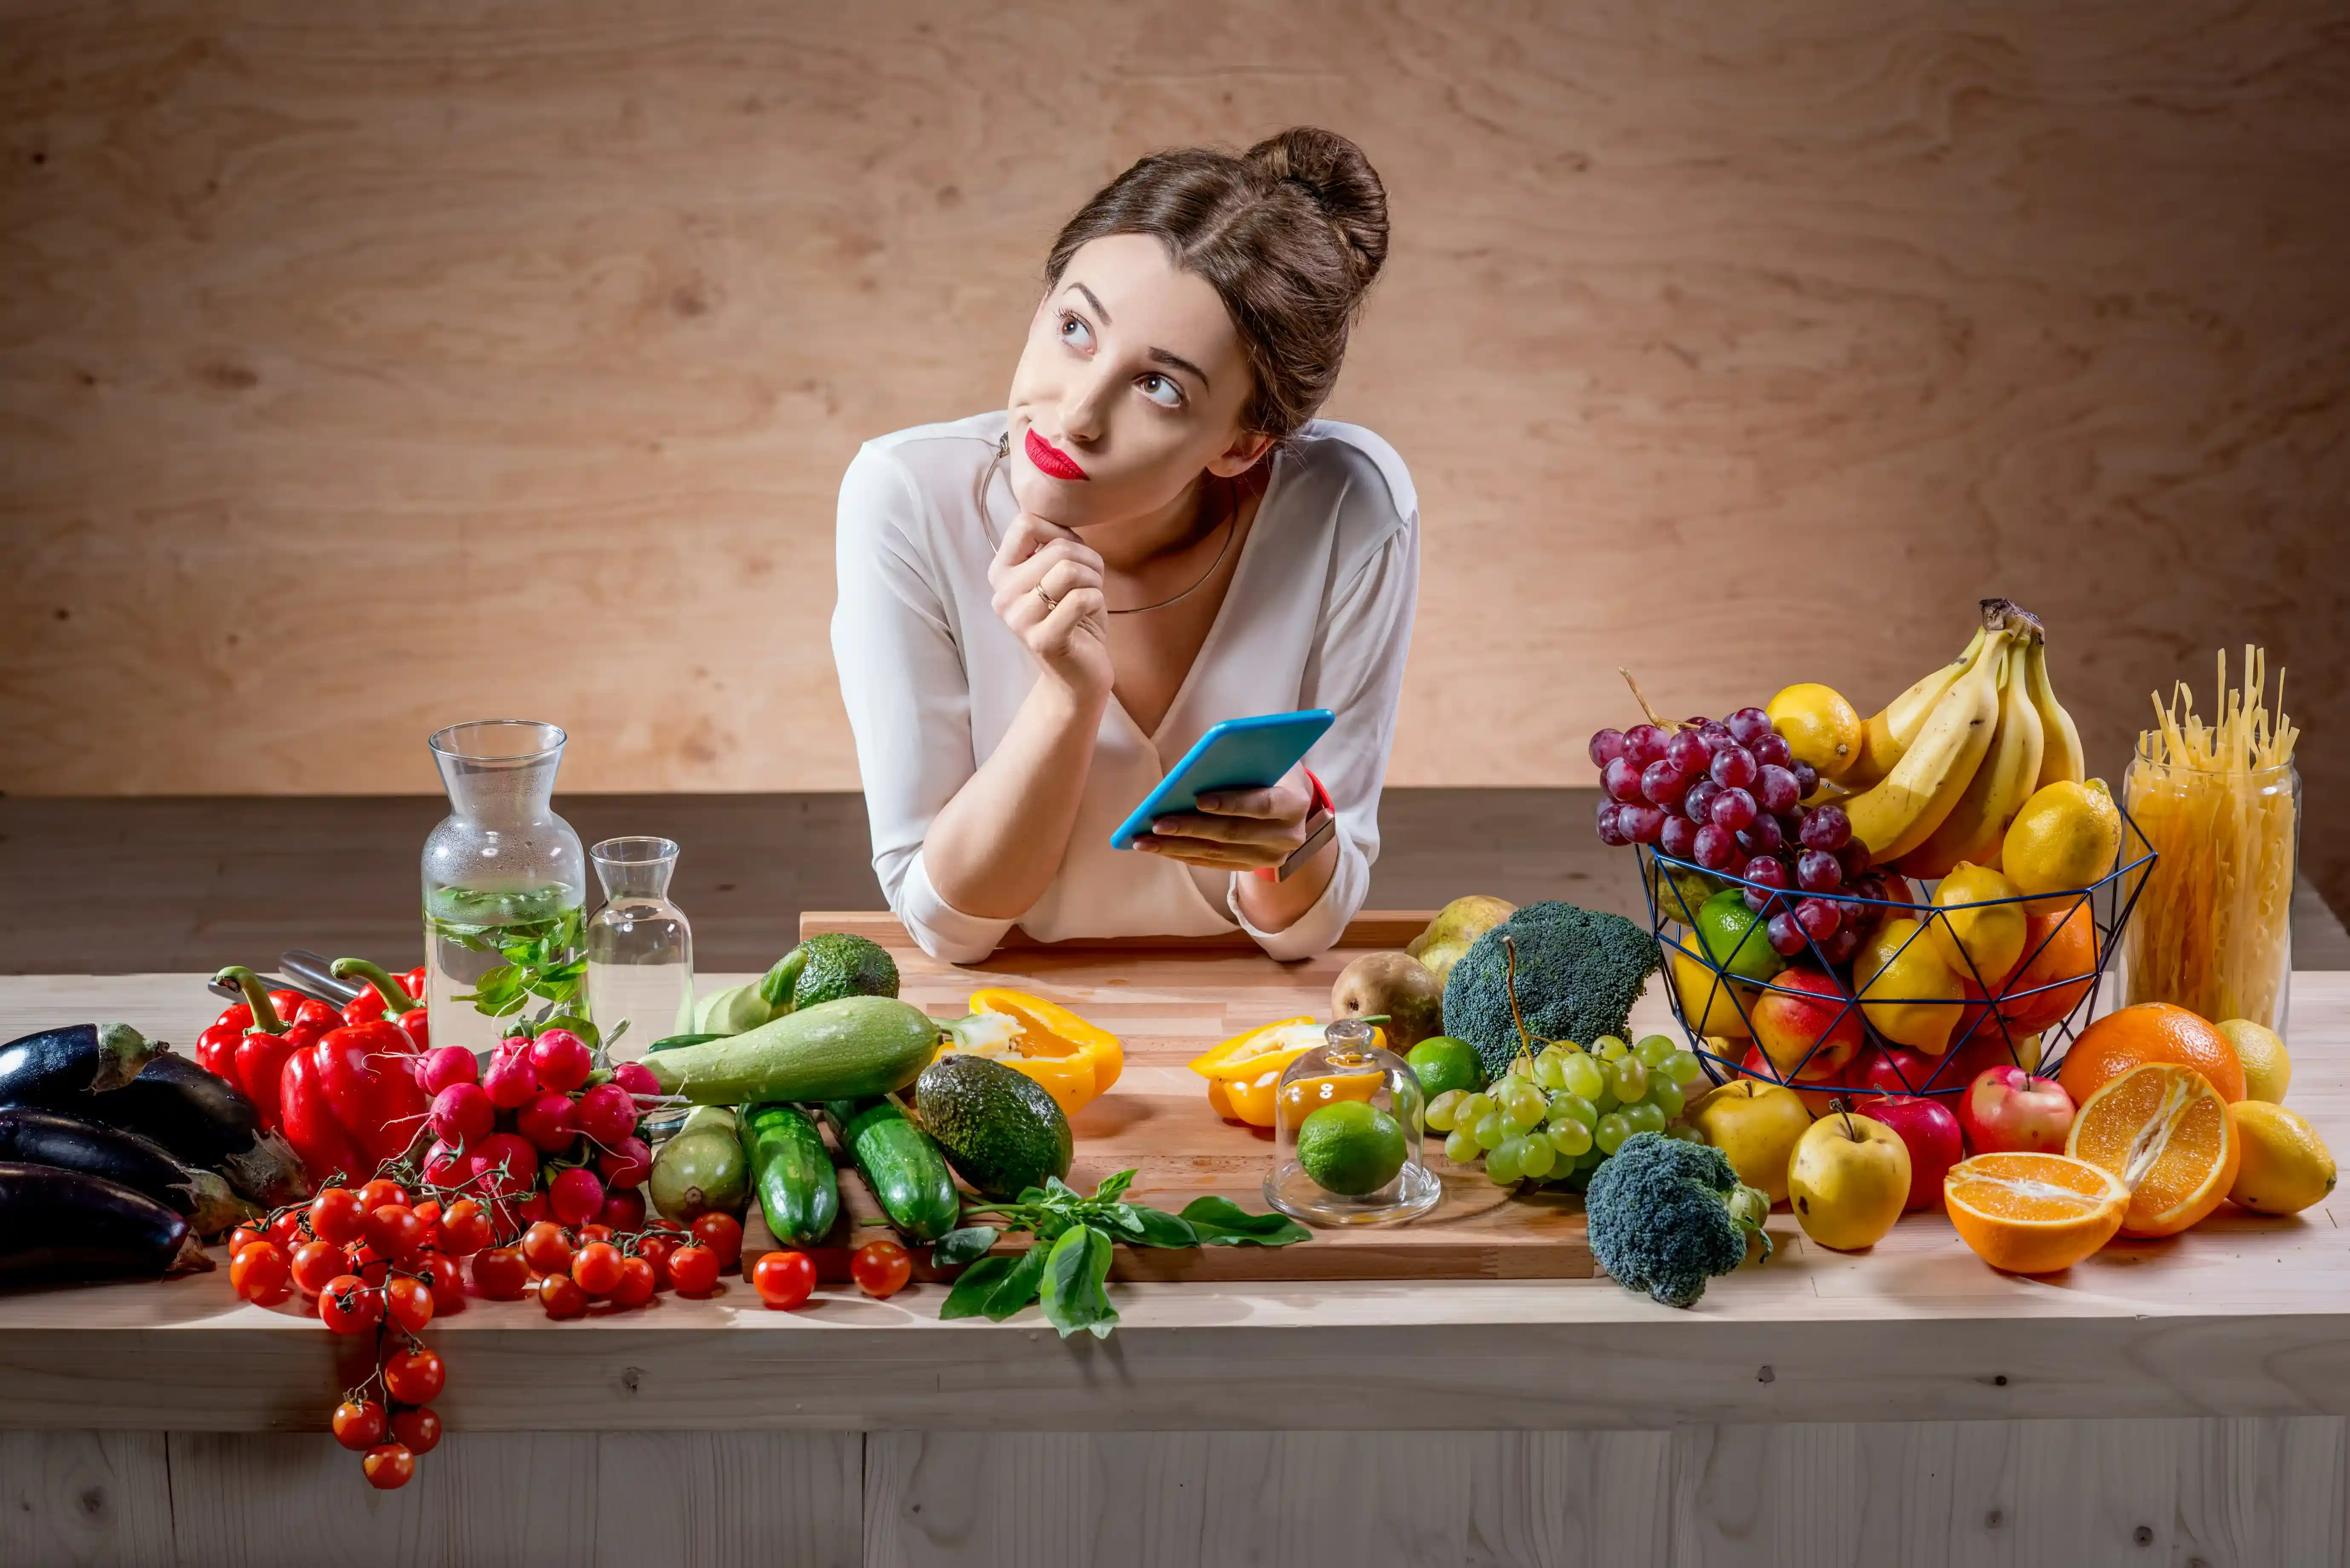 Хочется быть полезным. Здоровое питание девушка. Еда на женщине. Фотосессия с овощами и фруктами. Женщина ест овощи и фрукты.